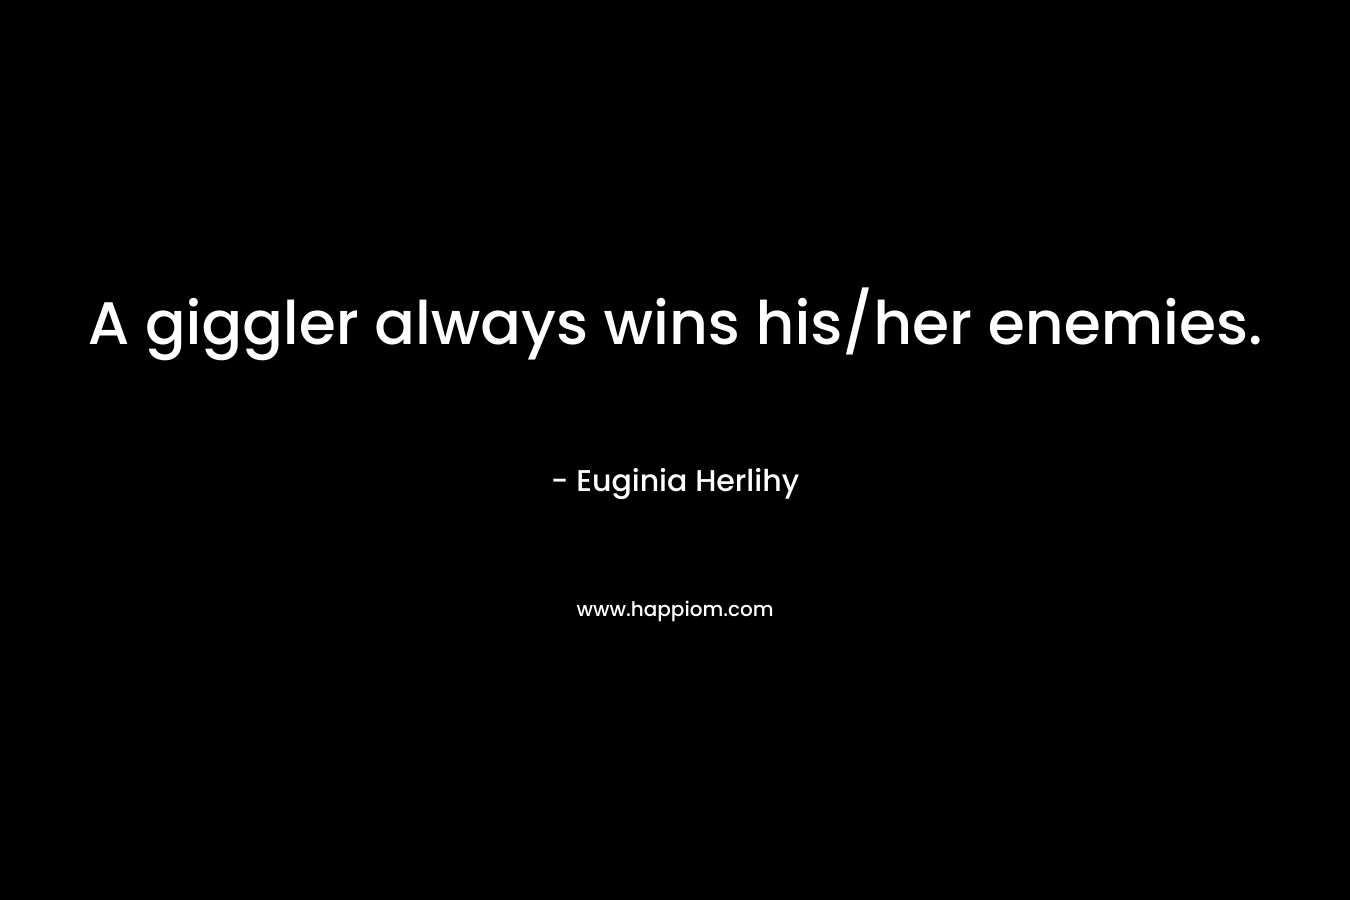 A giggler always wins his/her enemies. – Euginia Herlihy